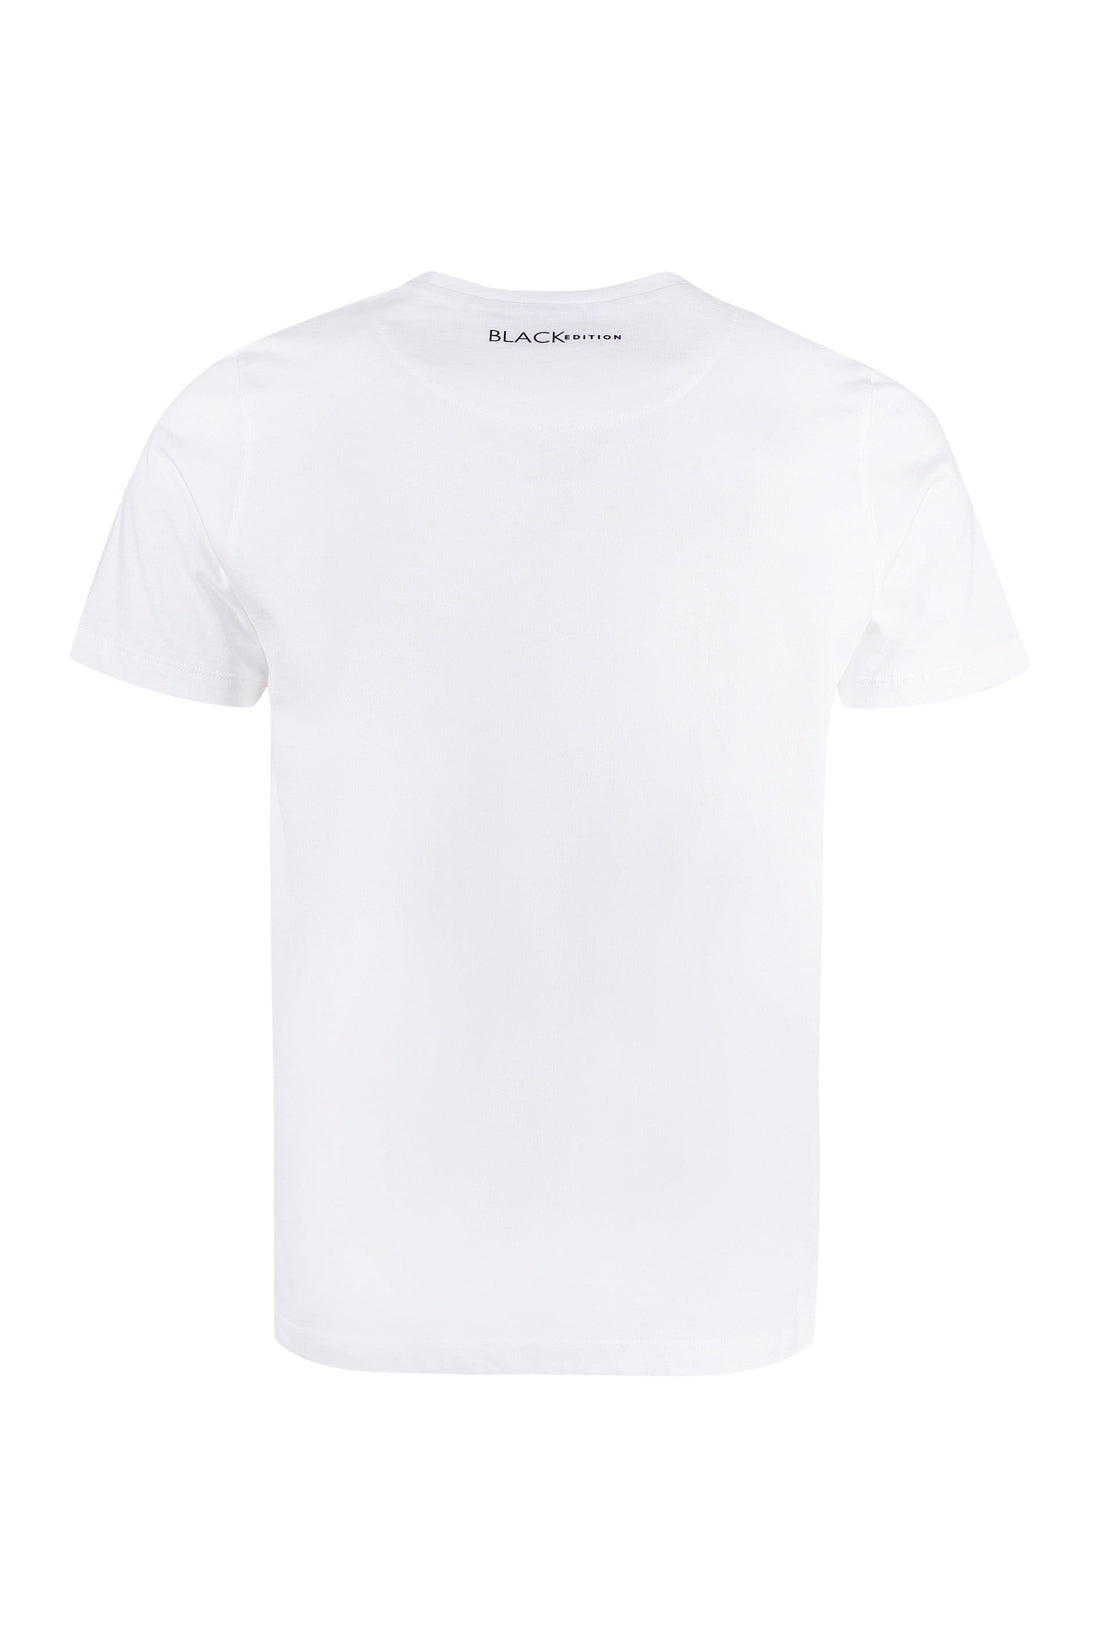 Canali-OUTLET-SALE-Cotton T-shirt-ARCHIVIST